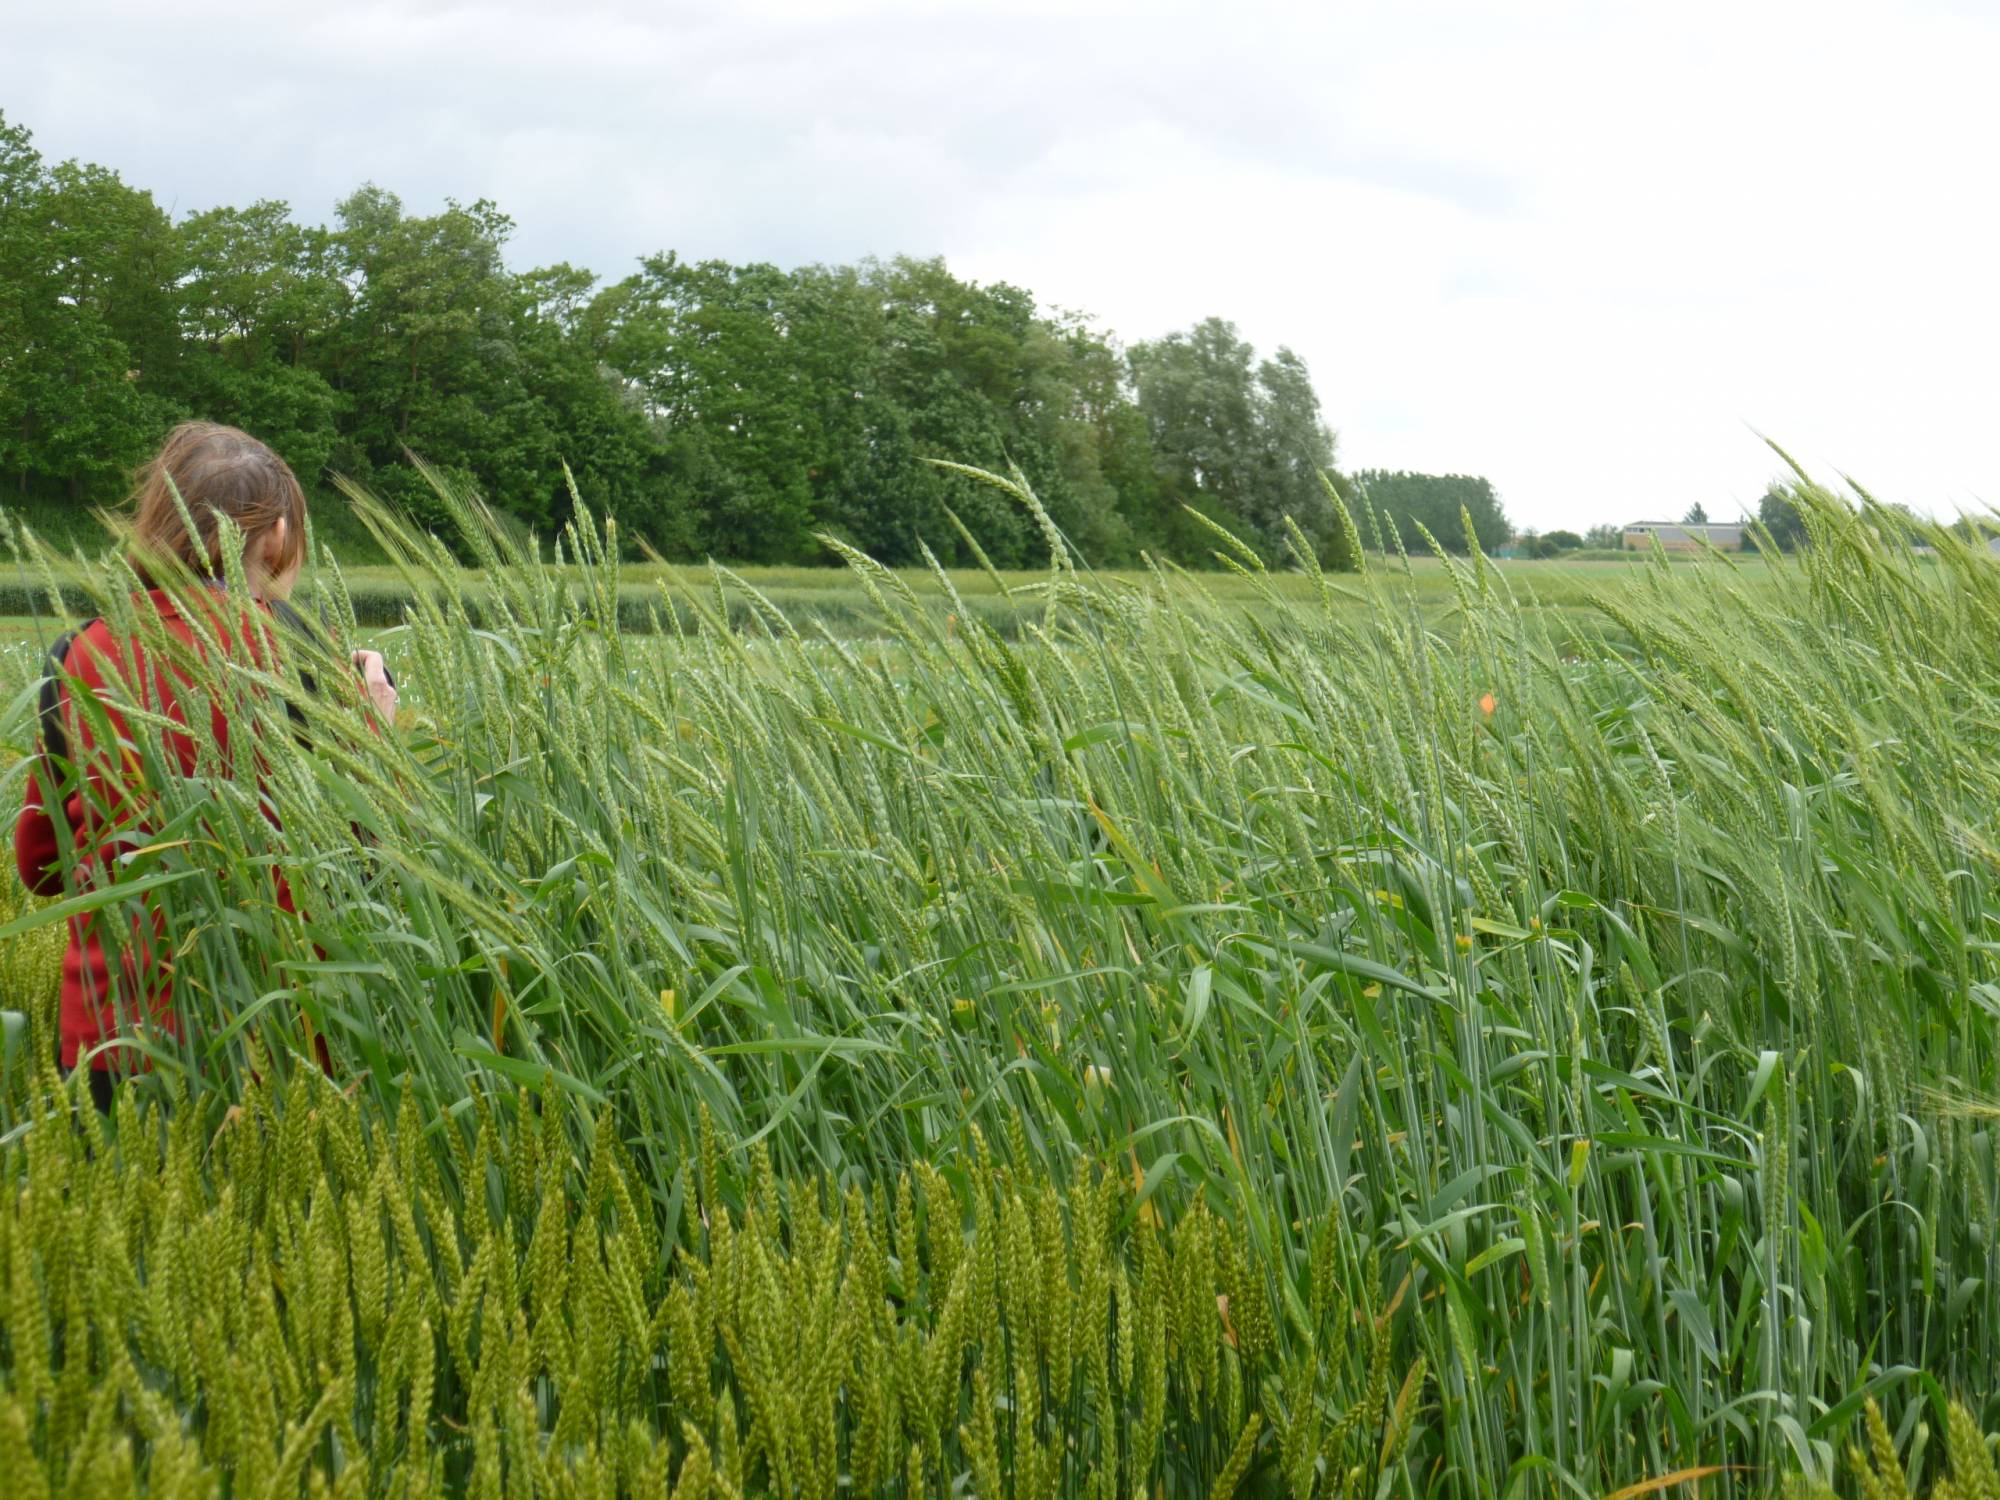 Blés récents et blés récents à la ferme du Moulon, INRA de Gif-sur-Yvette